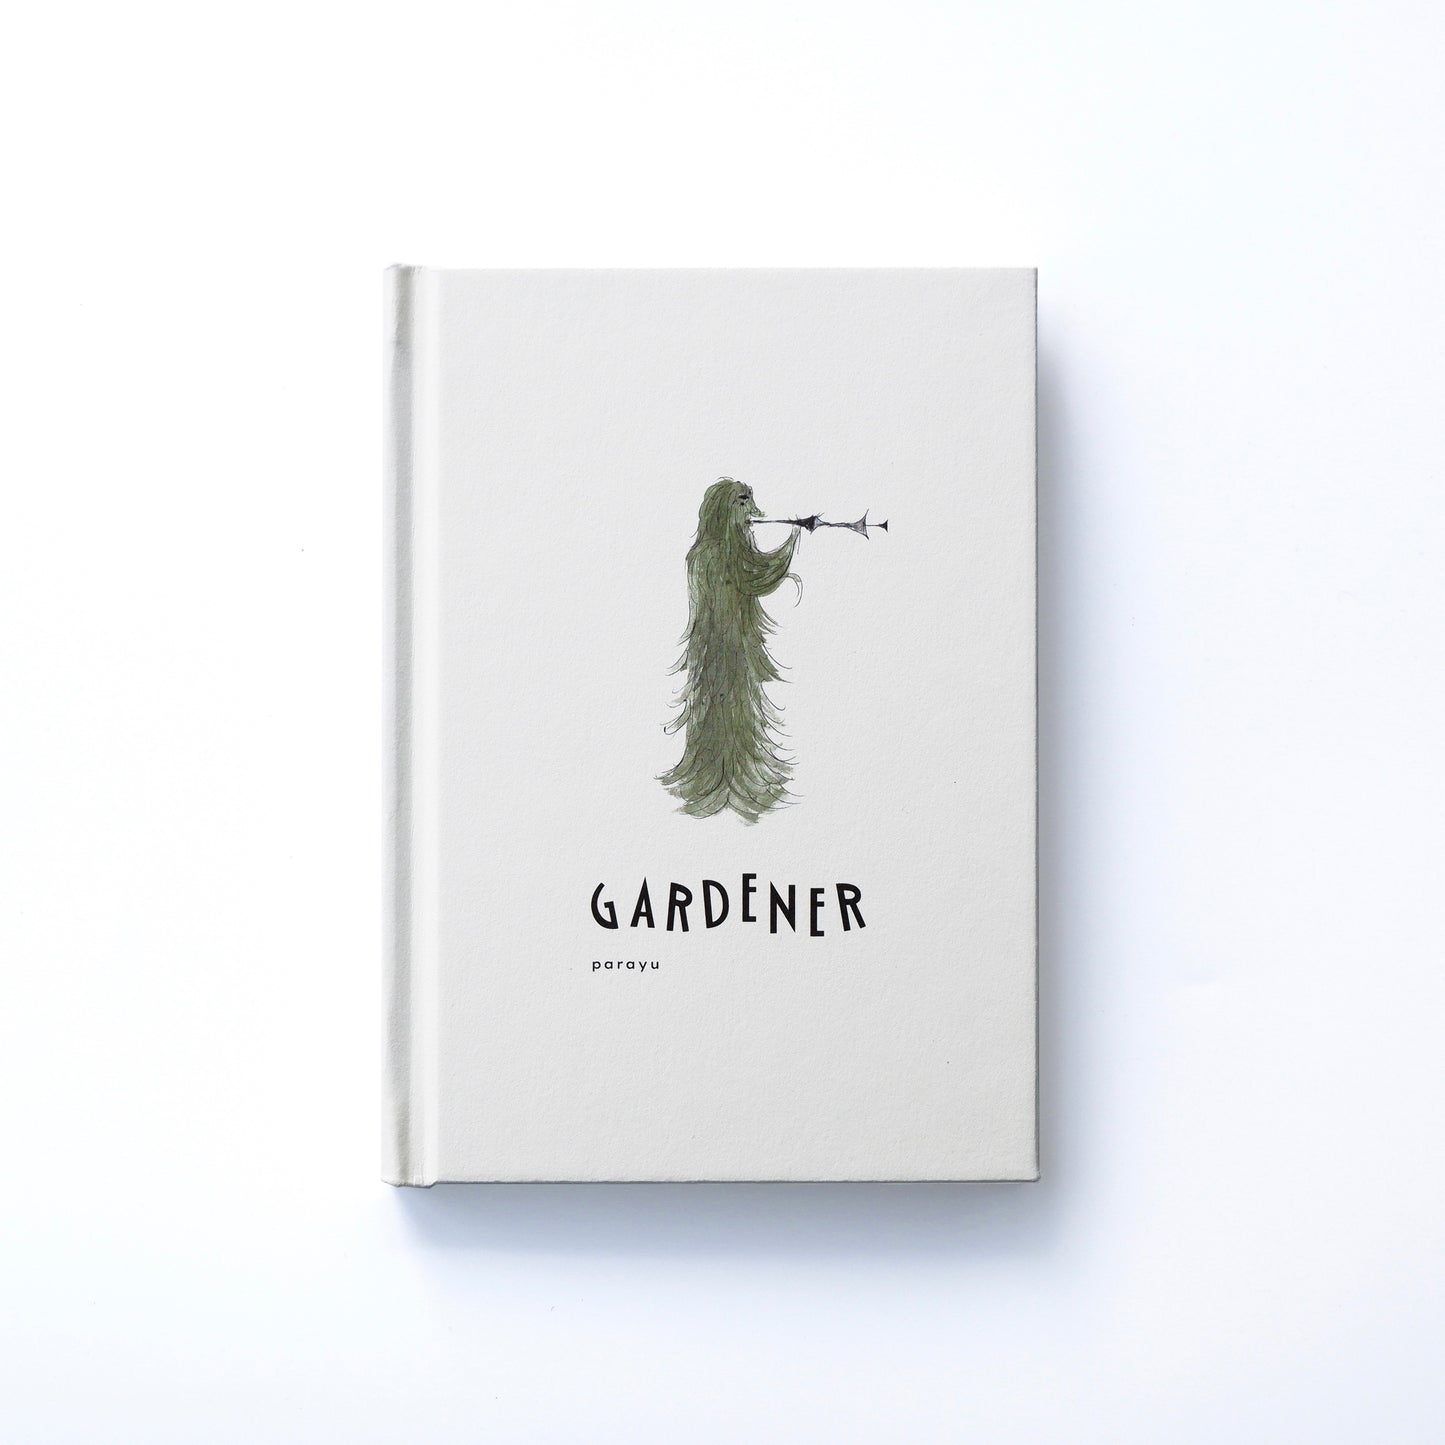 イラストレーターparayuが描く、不思議な庭の 季節をめぐるミニ絵本『GARDENER』